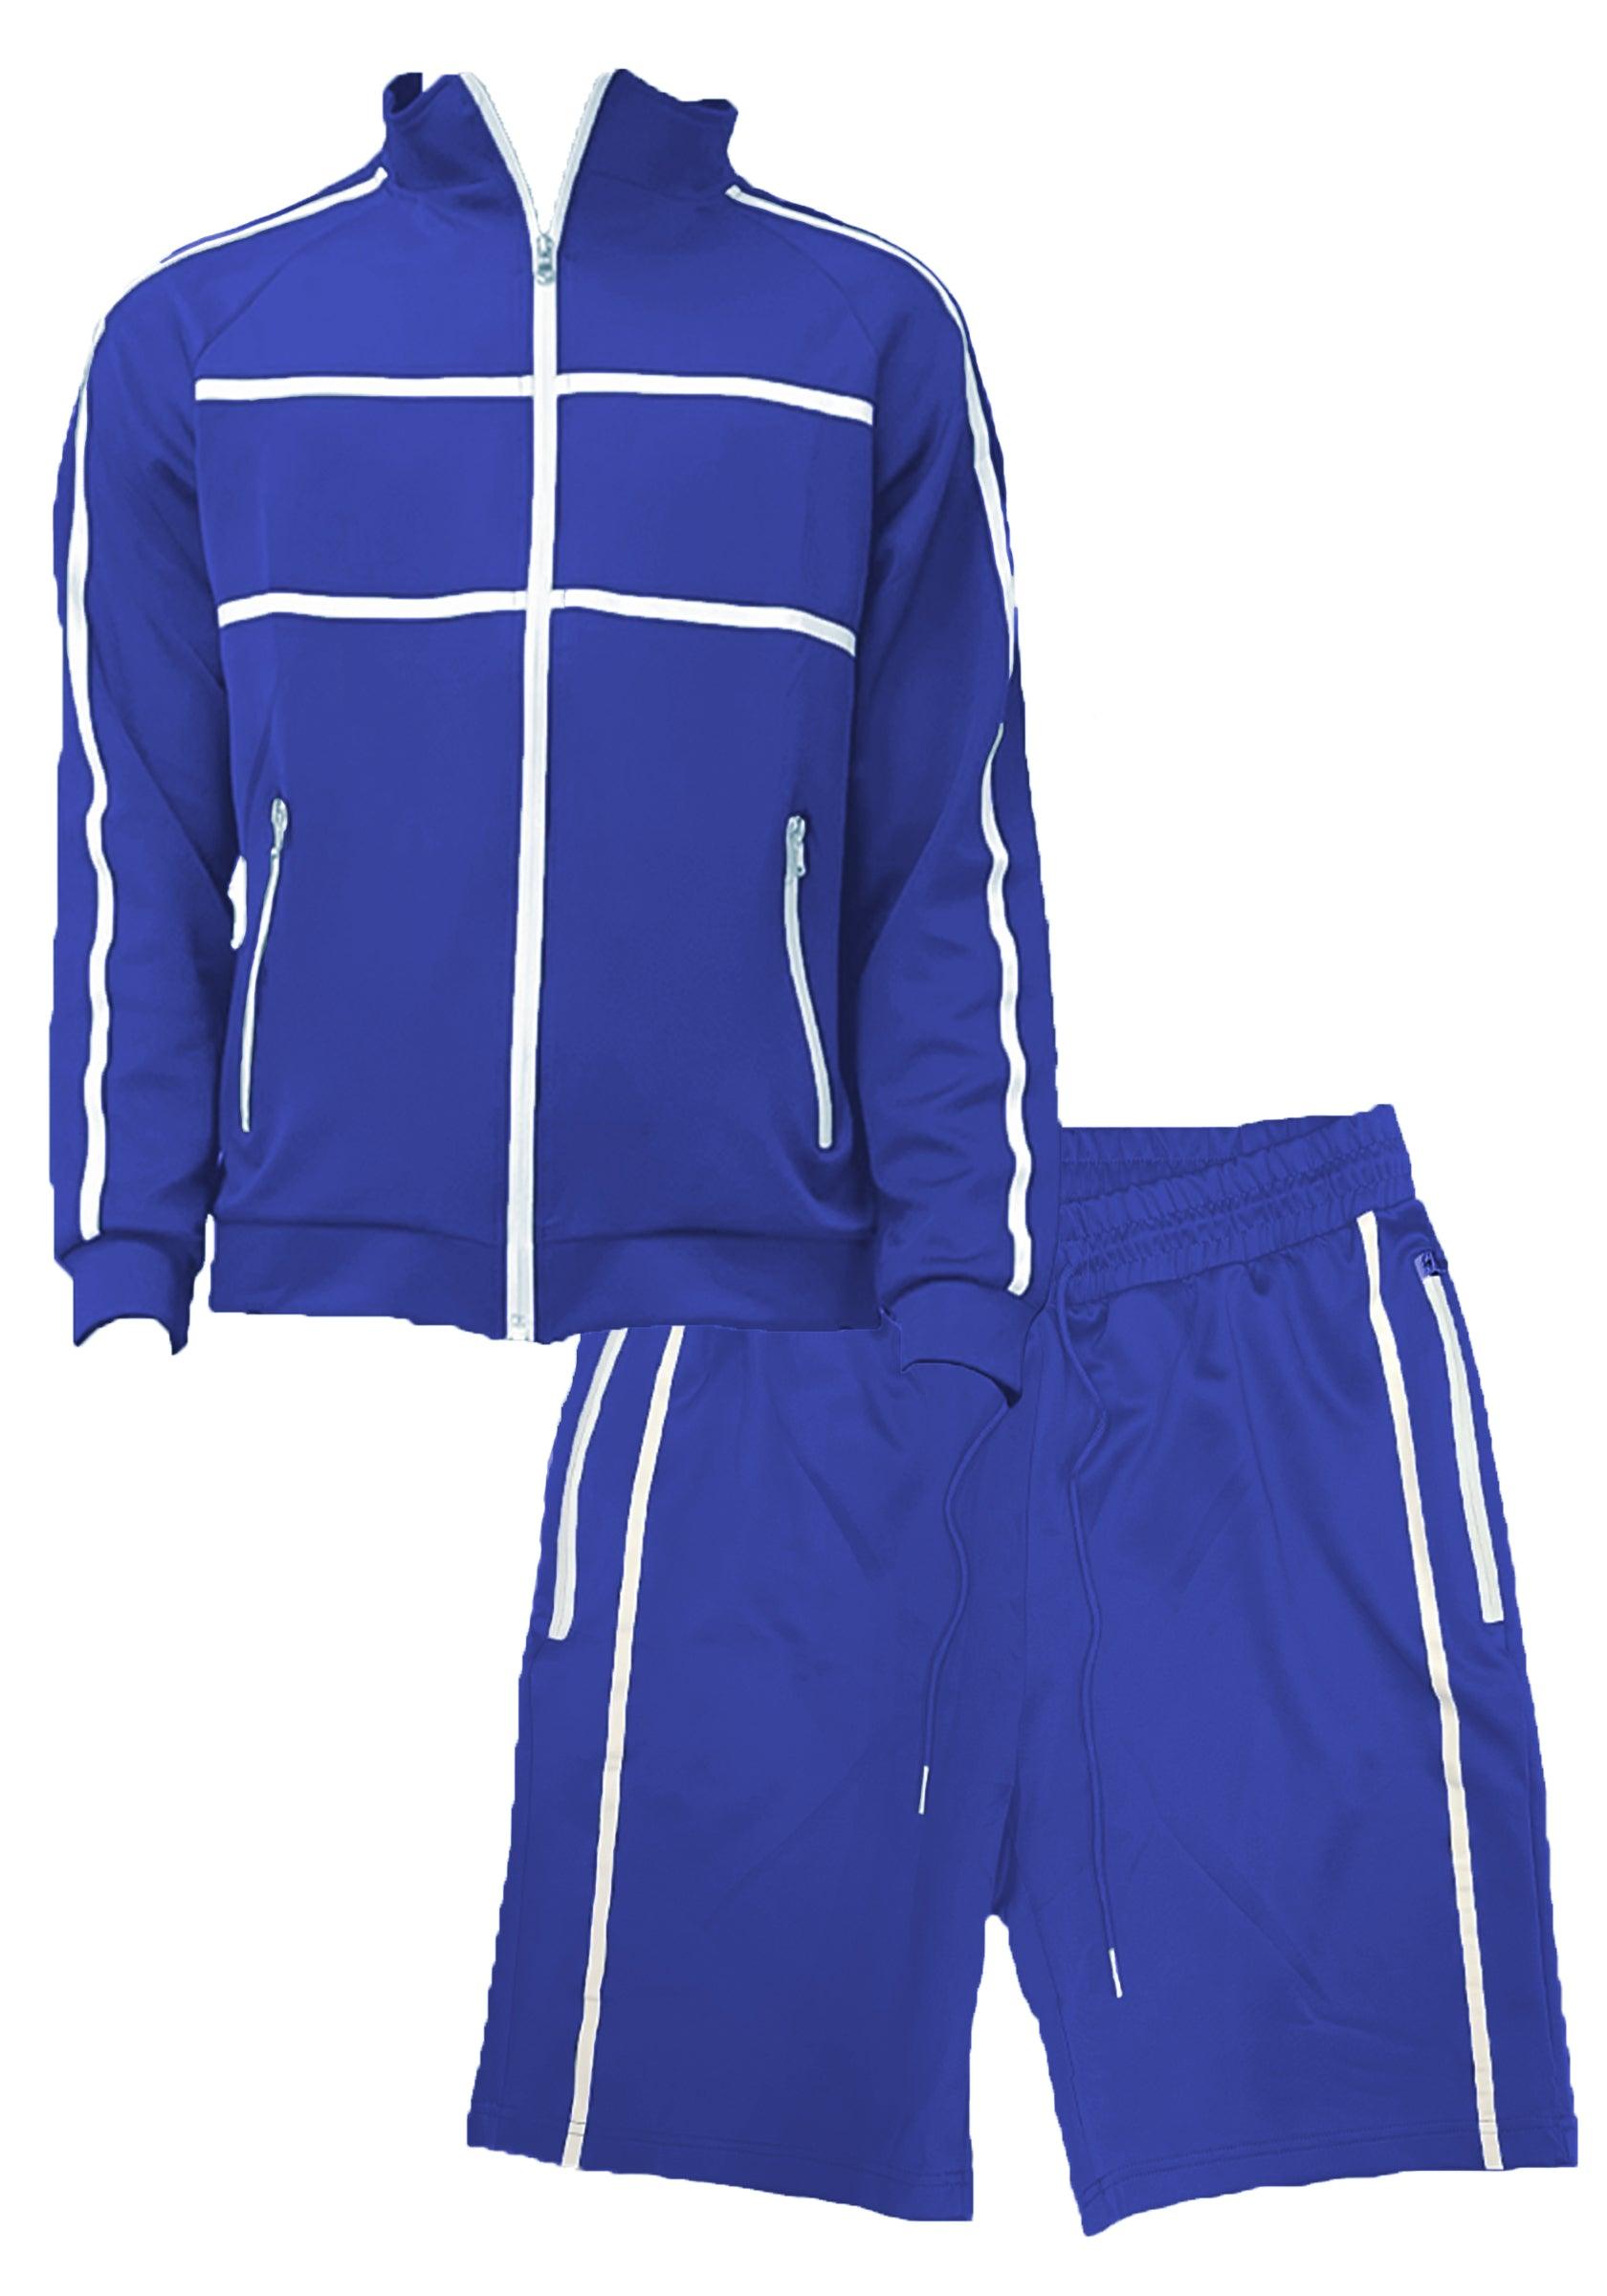 Men's 2PC Track Sets Blue Jordan Track Jacket Short Set